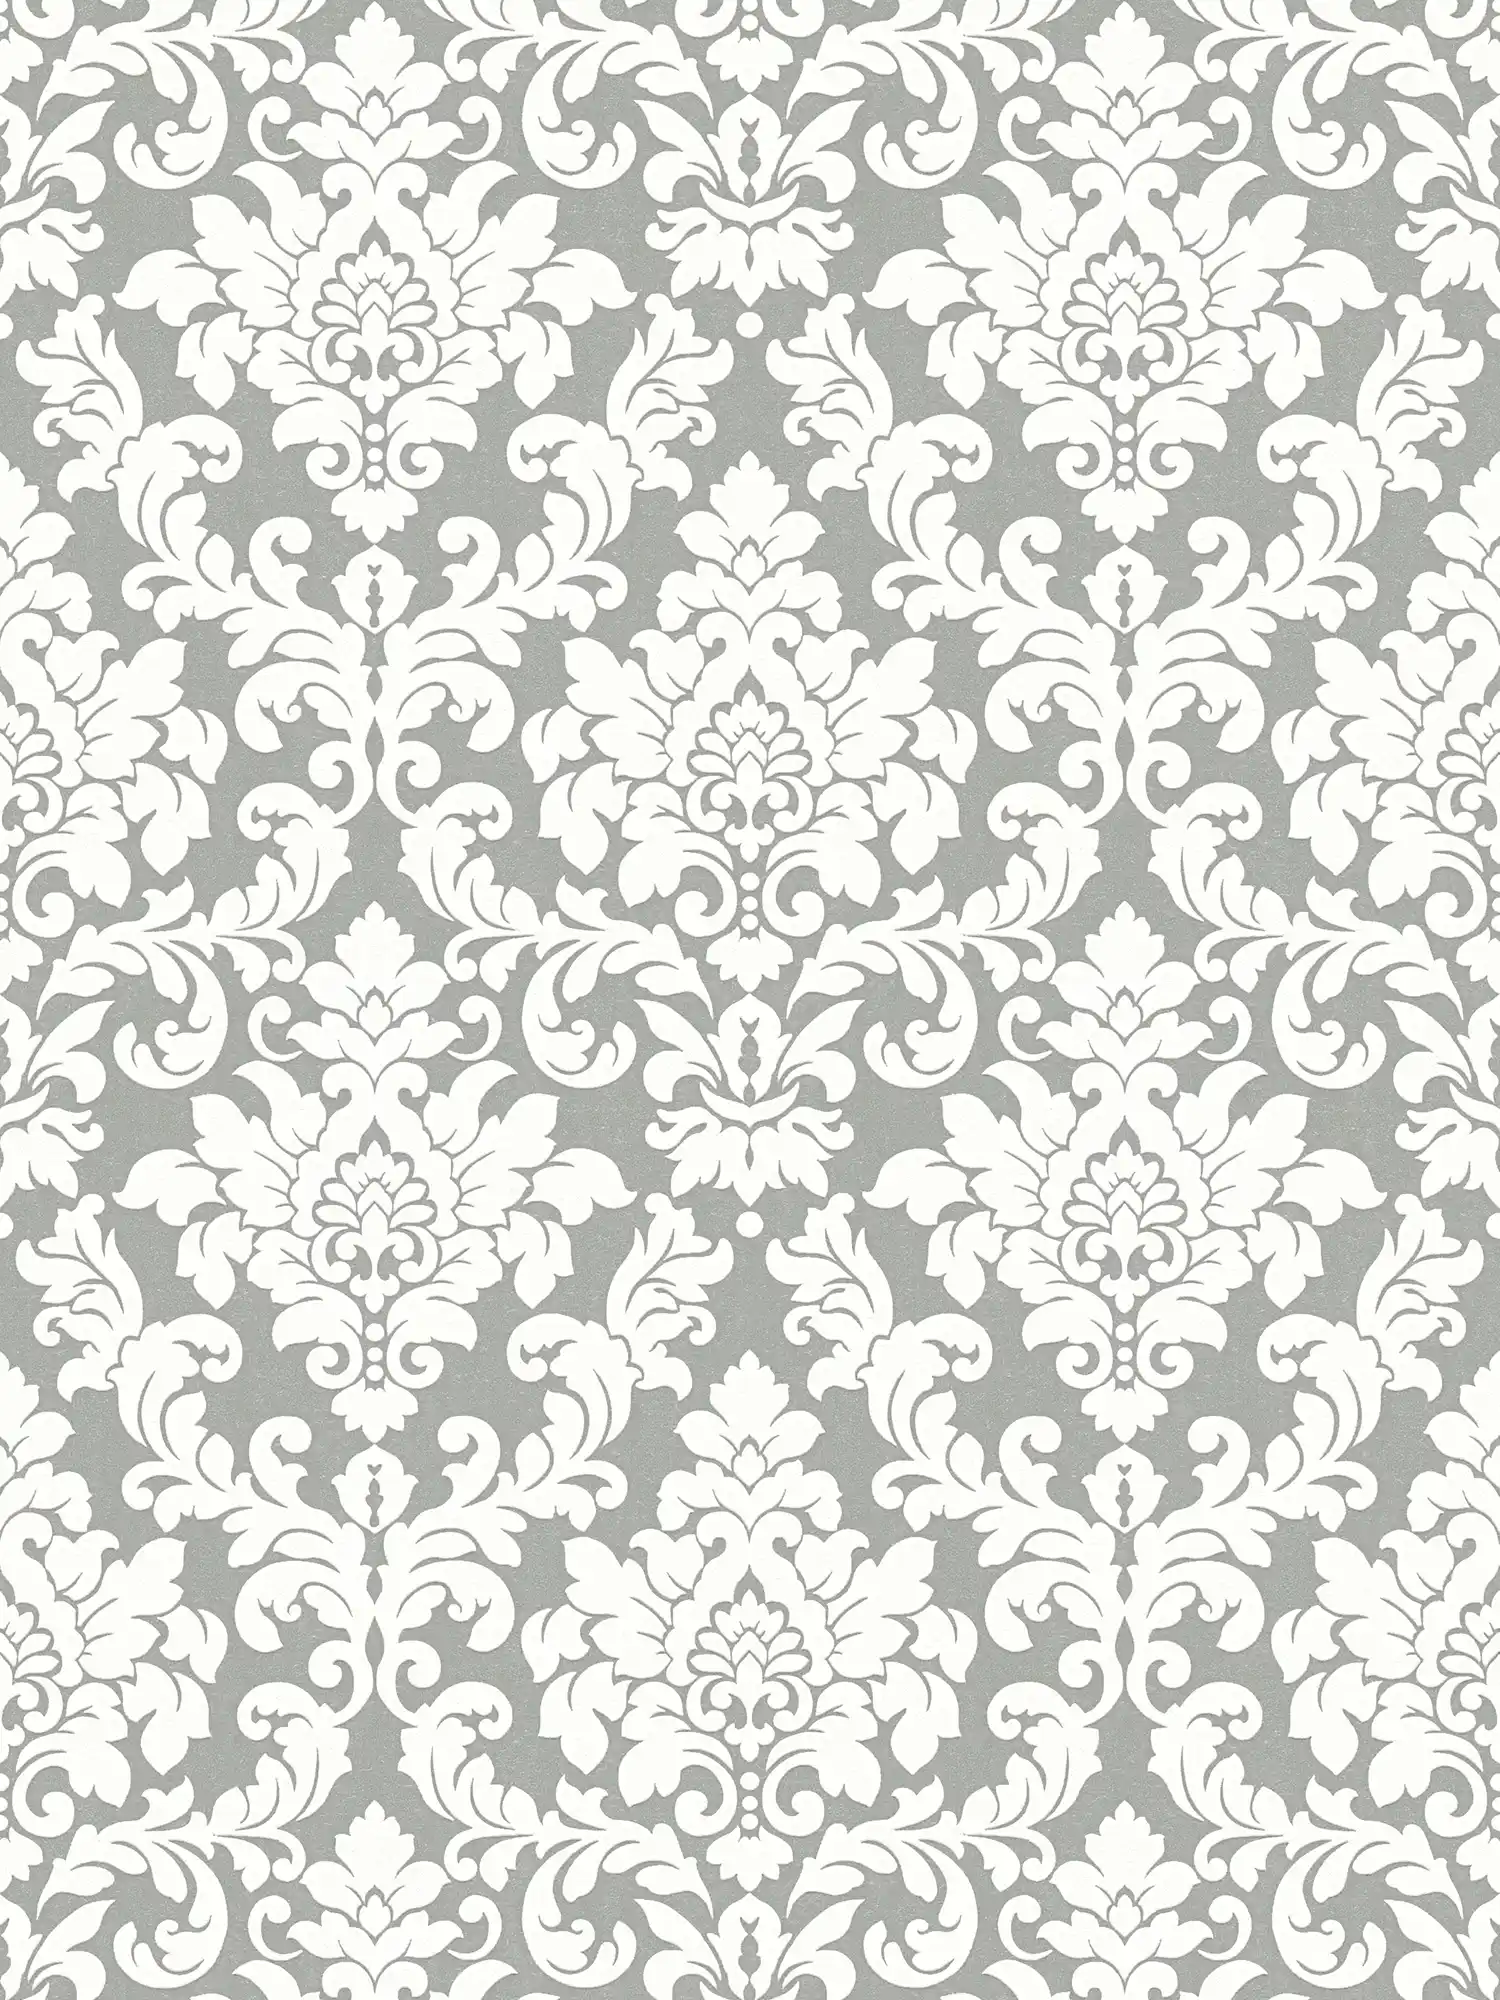 Silver wallpaper with white ornament design
